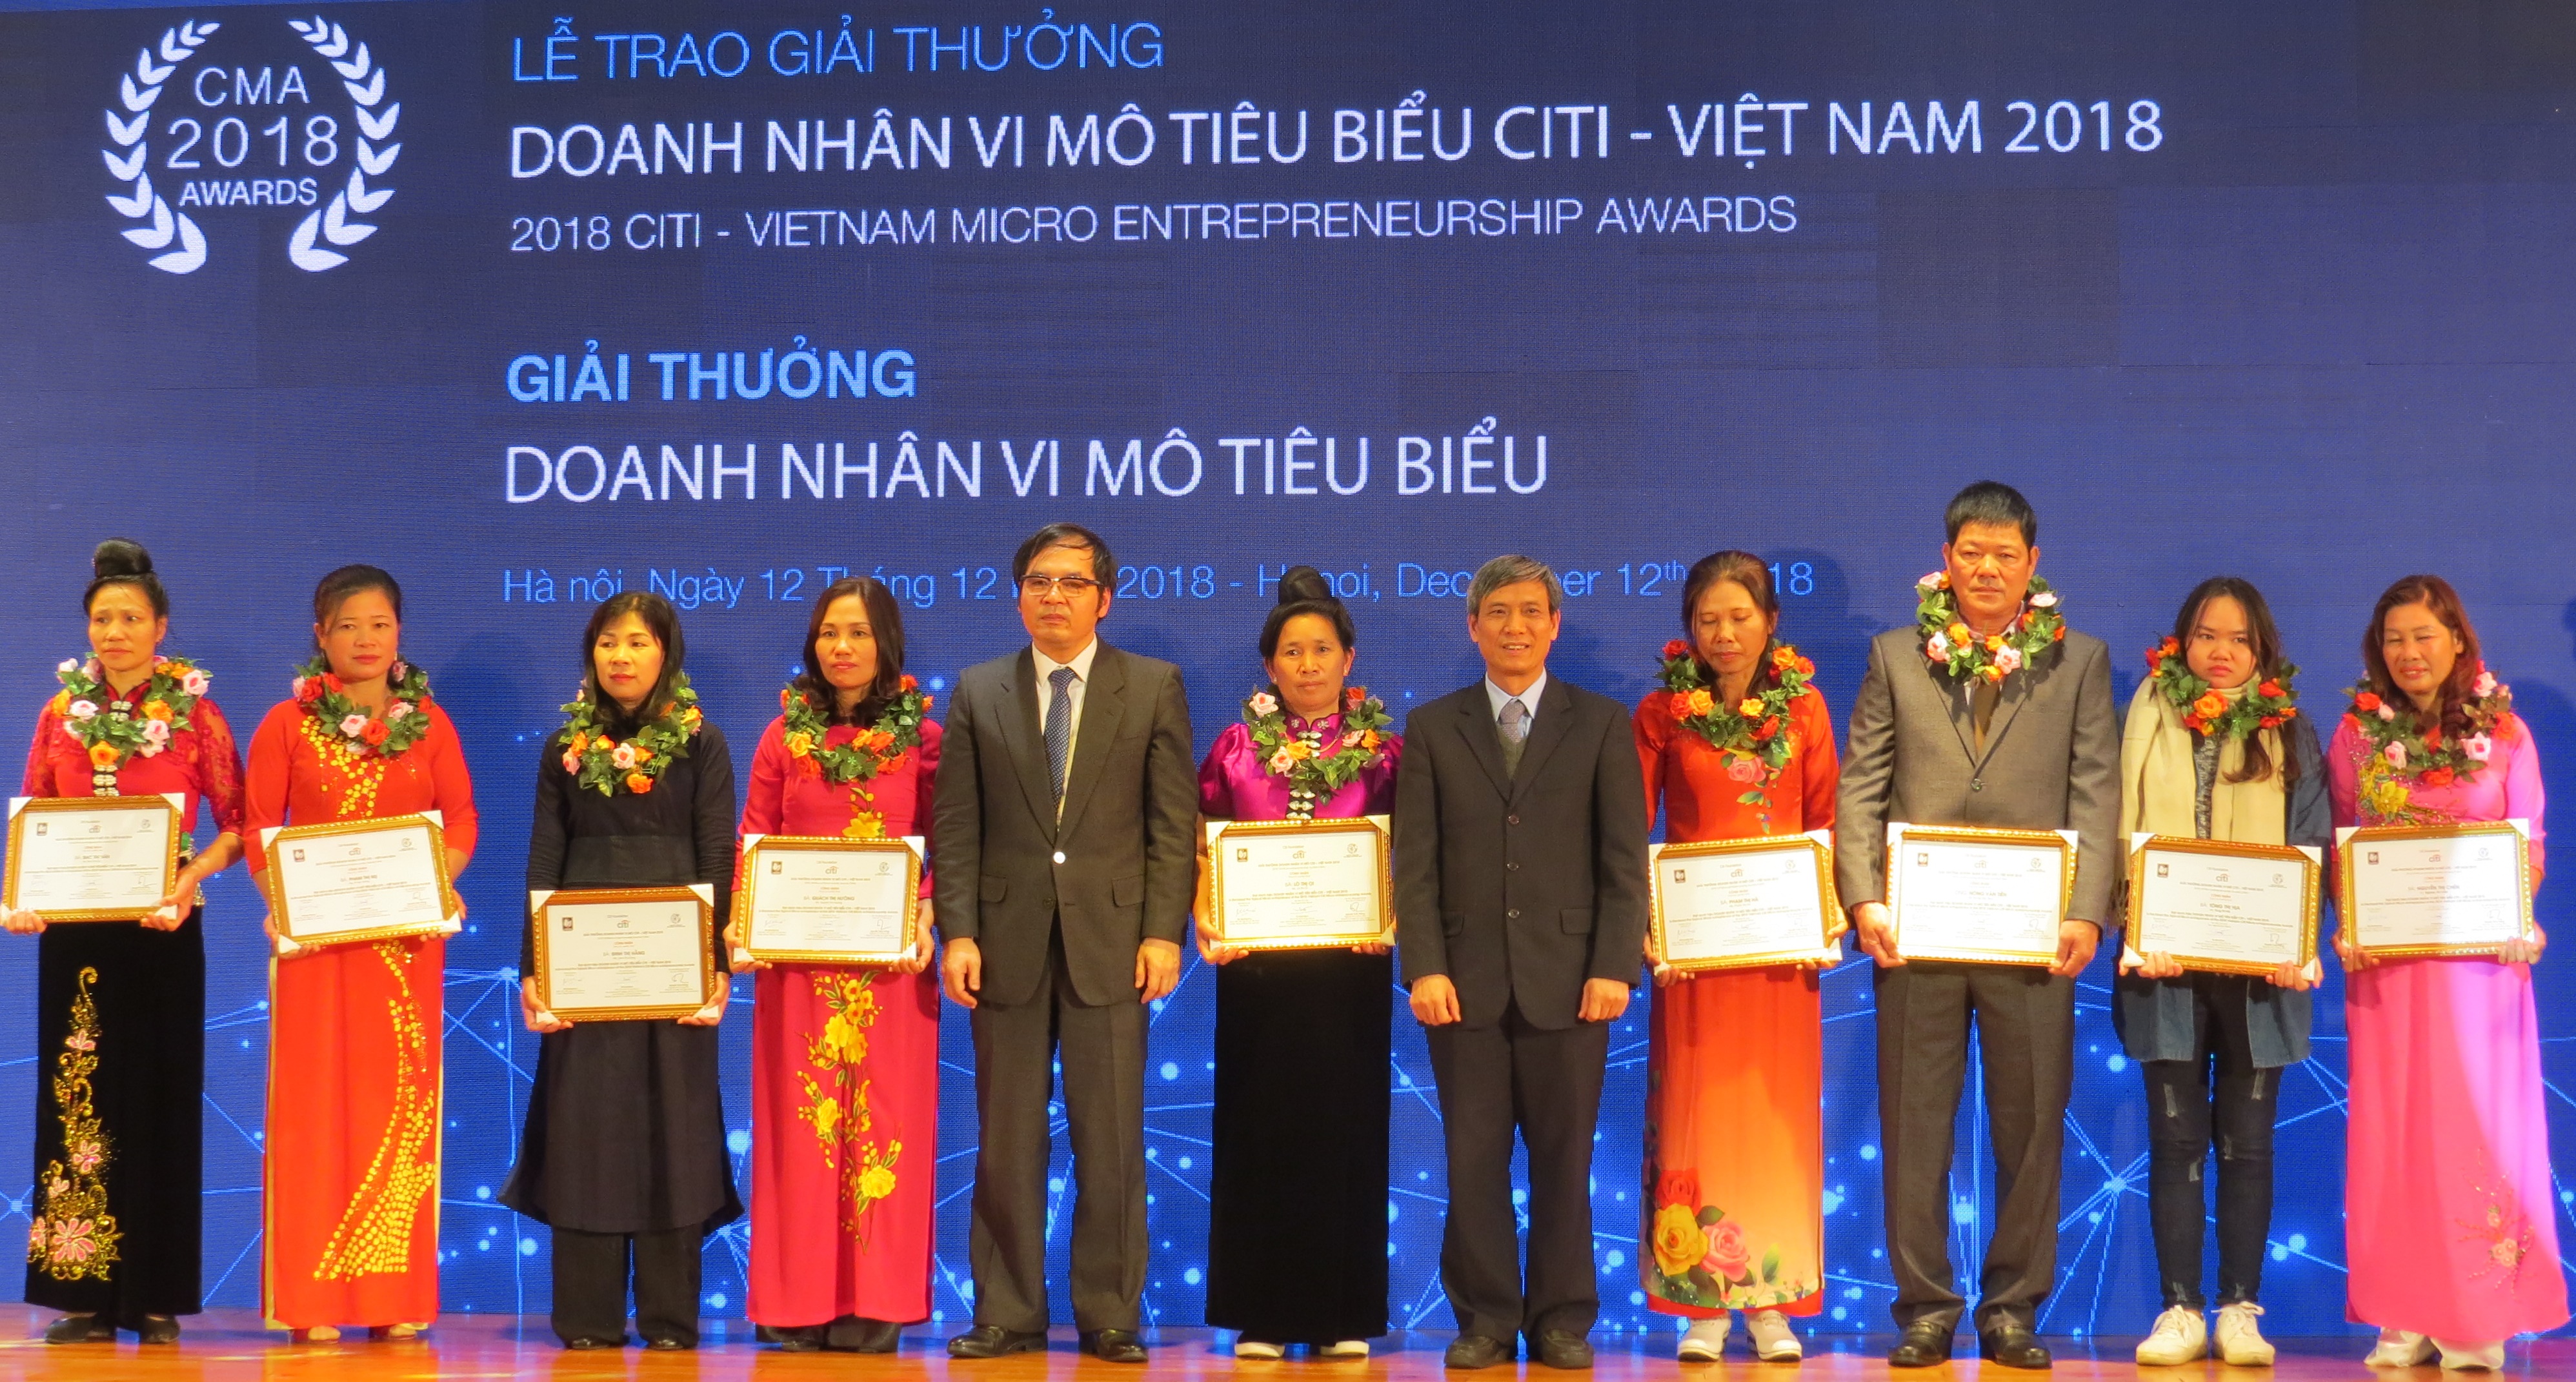 CFRC vinh dự có hai thành viên đạt danh hiệu Doanh nhân vi mô tiêu biểu Citi – Việt Nam 2018